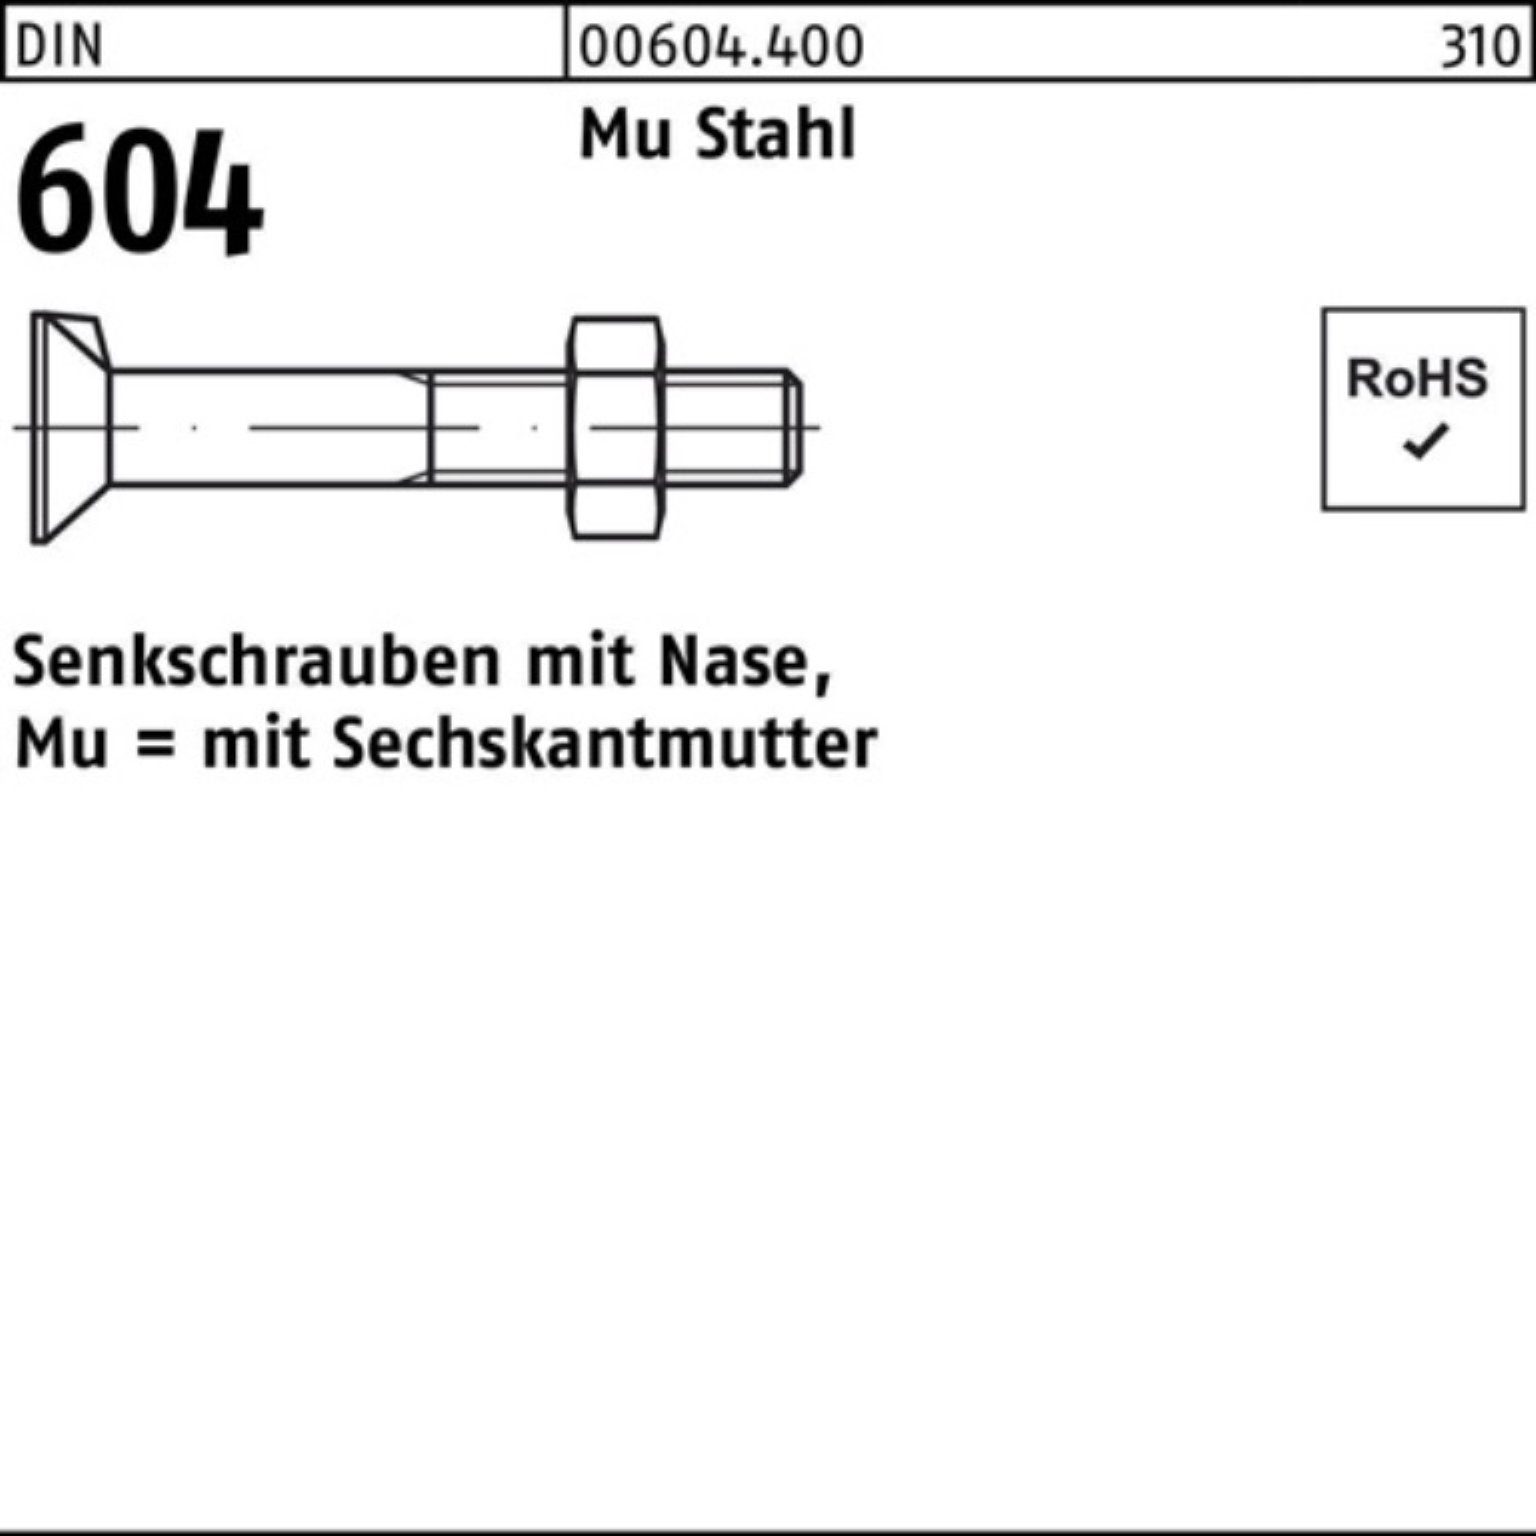 Reyher Senkschraube 100er Senkschraube Stahl 4.6 M16x Pack 604 DIN Mu 5 Nase/6-ktmutter 55